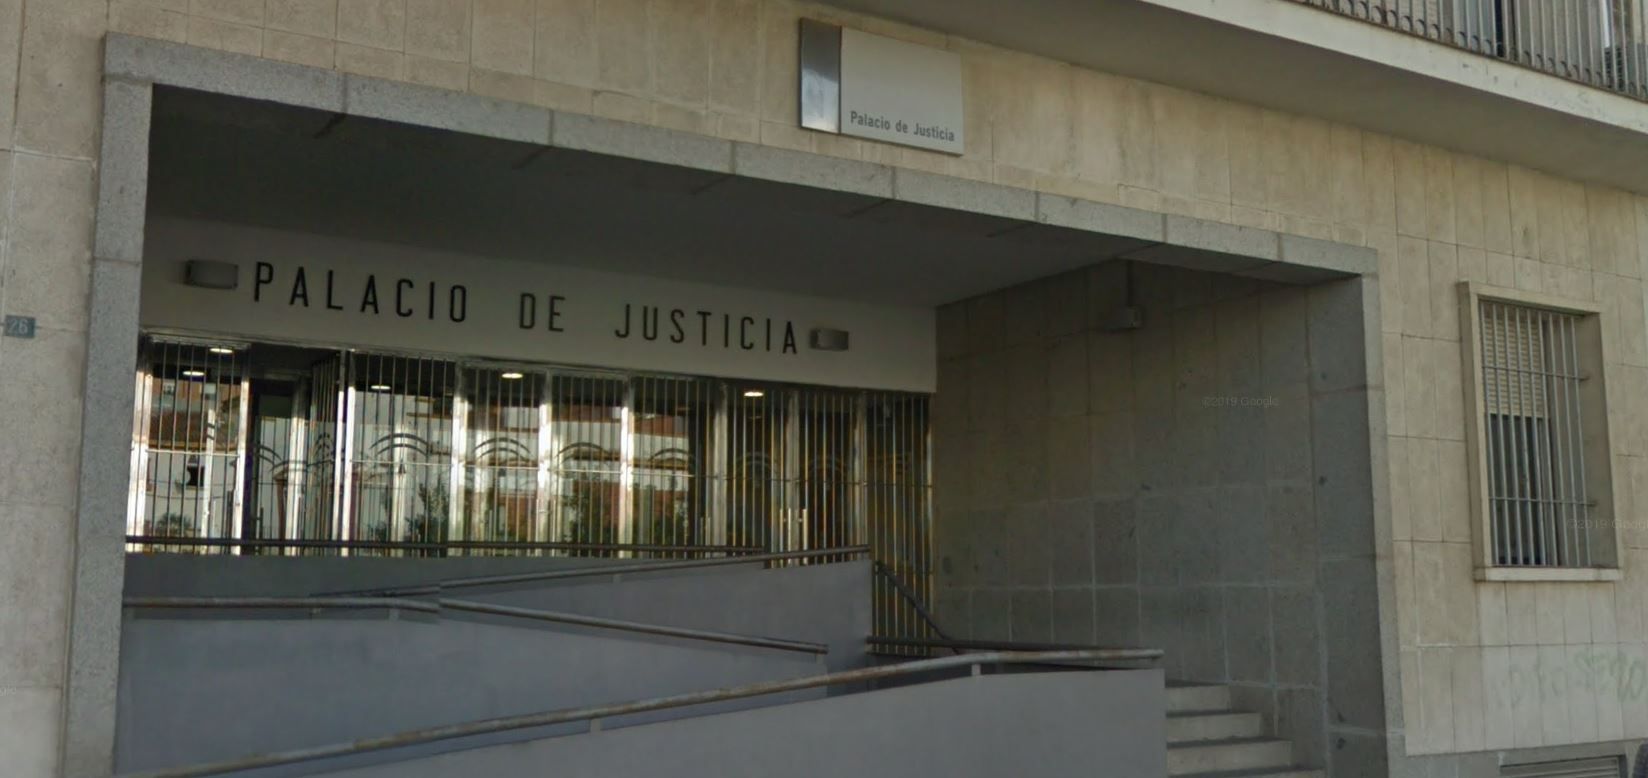 El juzgado de instrucción de Huelva.